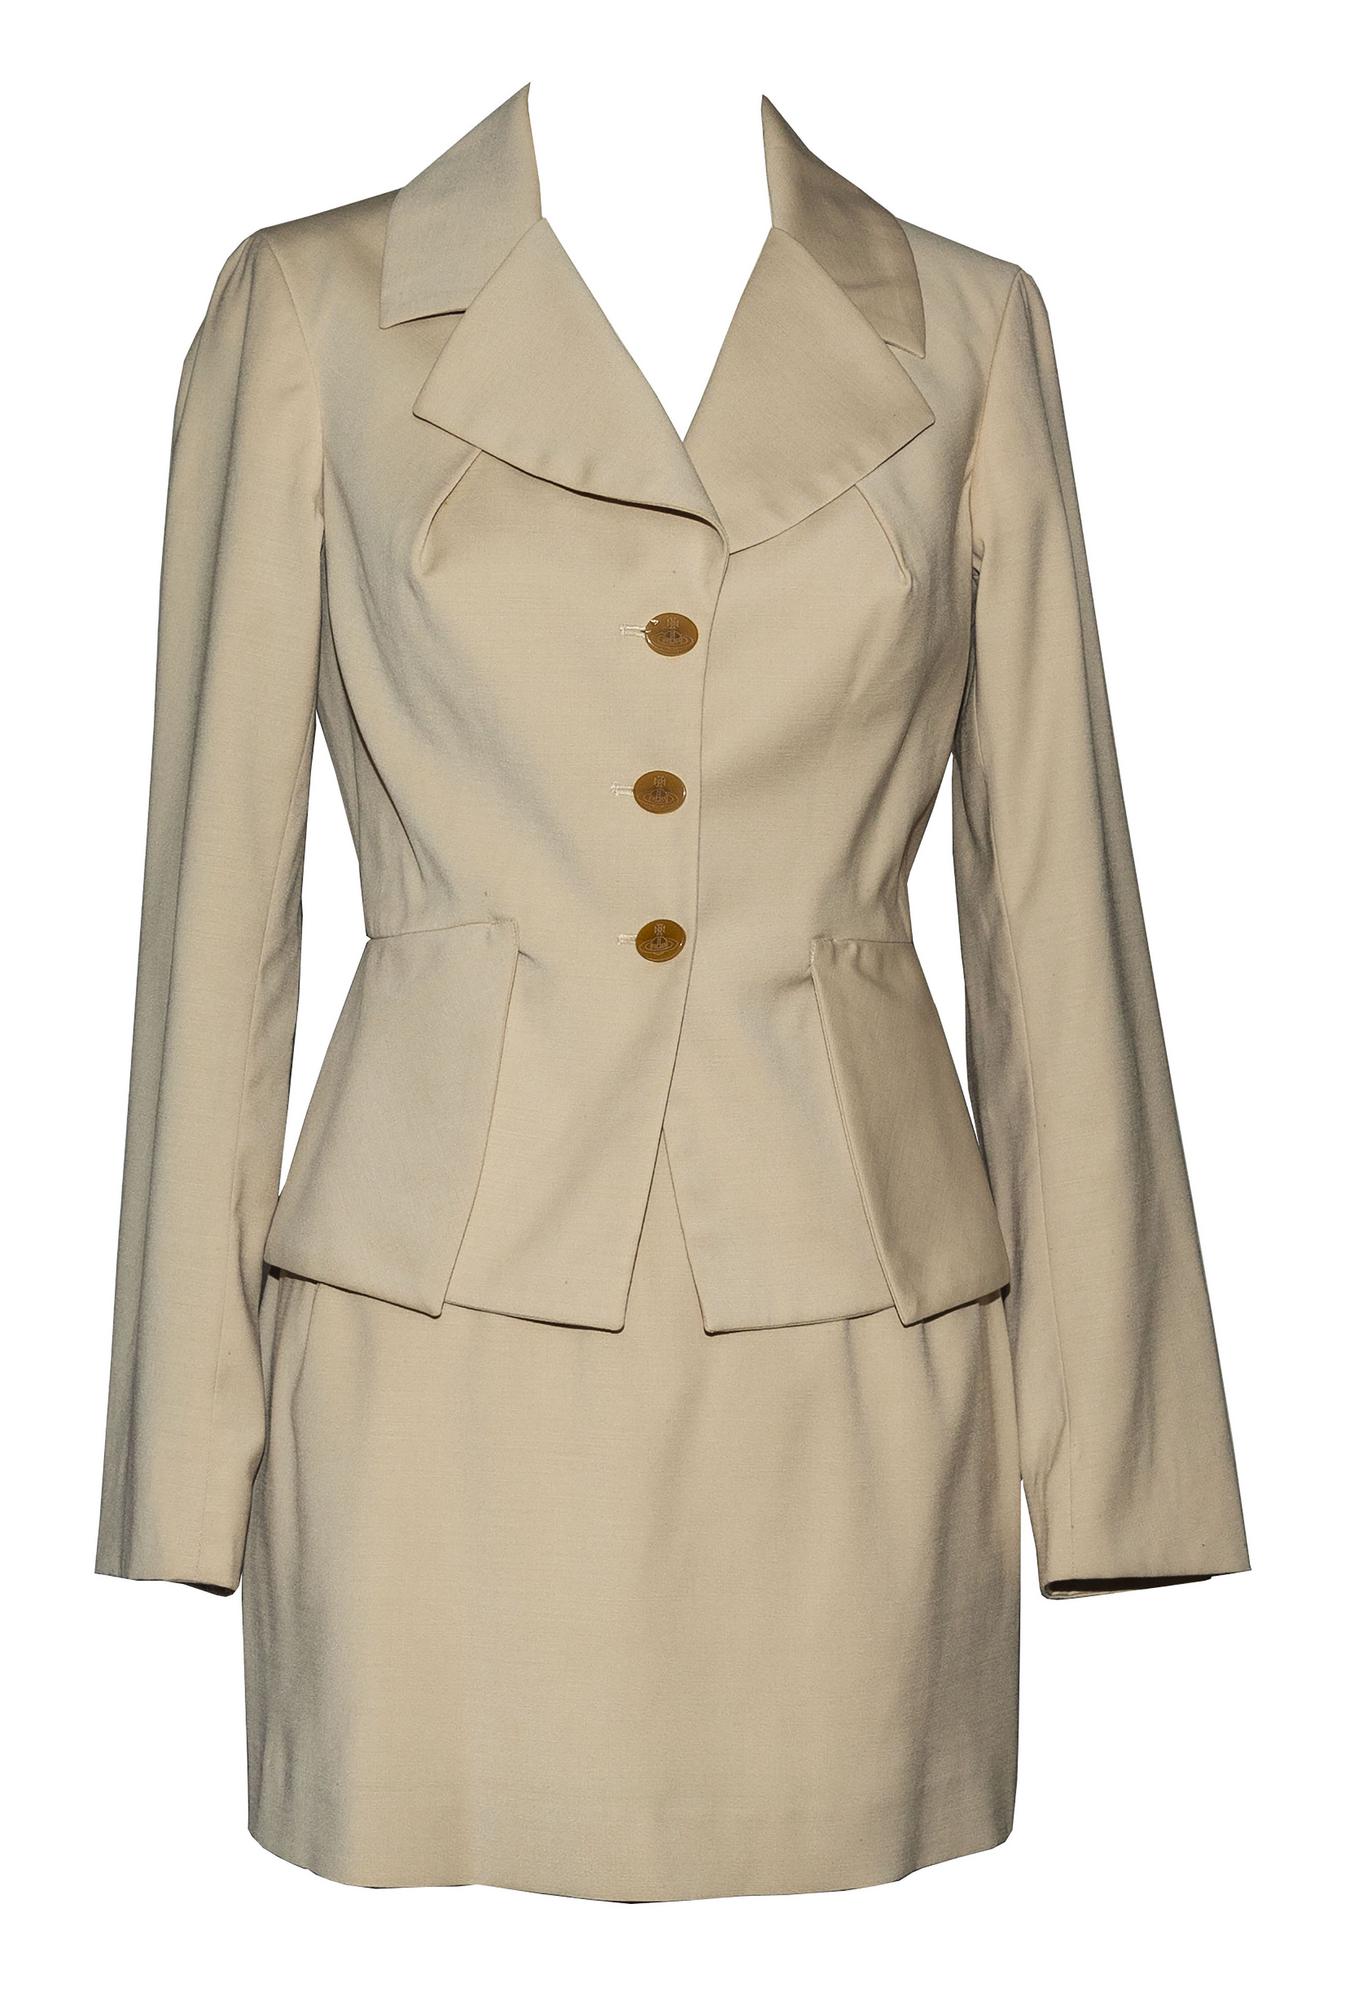 Vivienne Westwood BETTINA WOOL SUIT Description: Cream-colored wool suit...